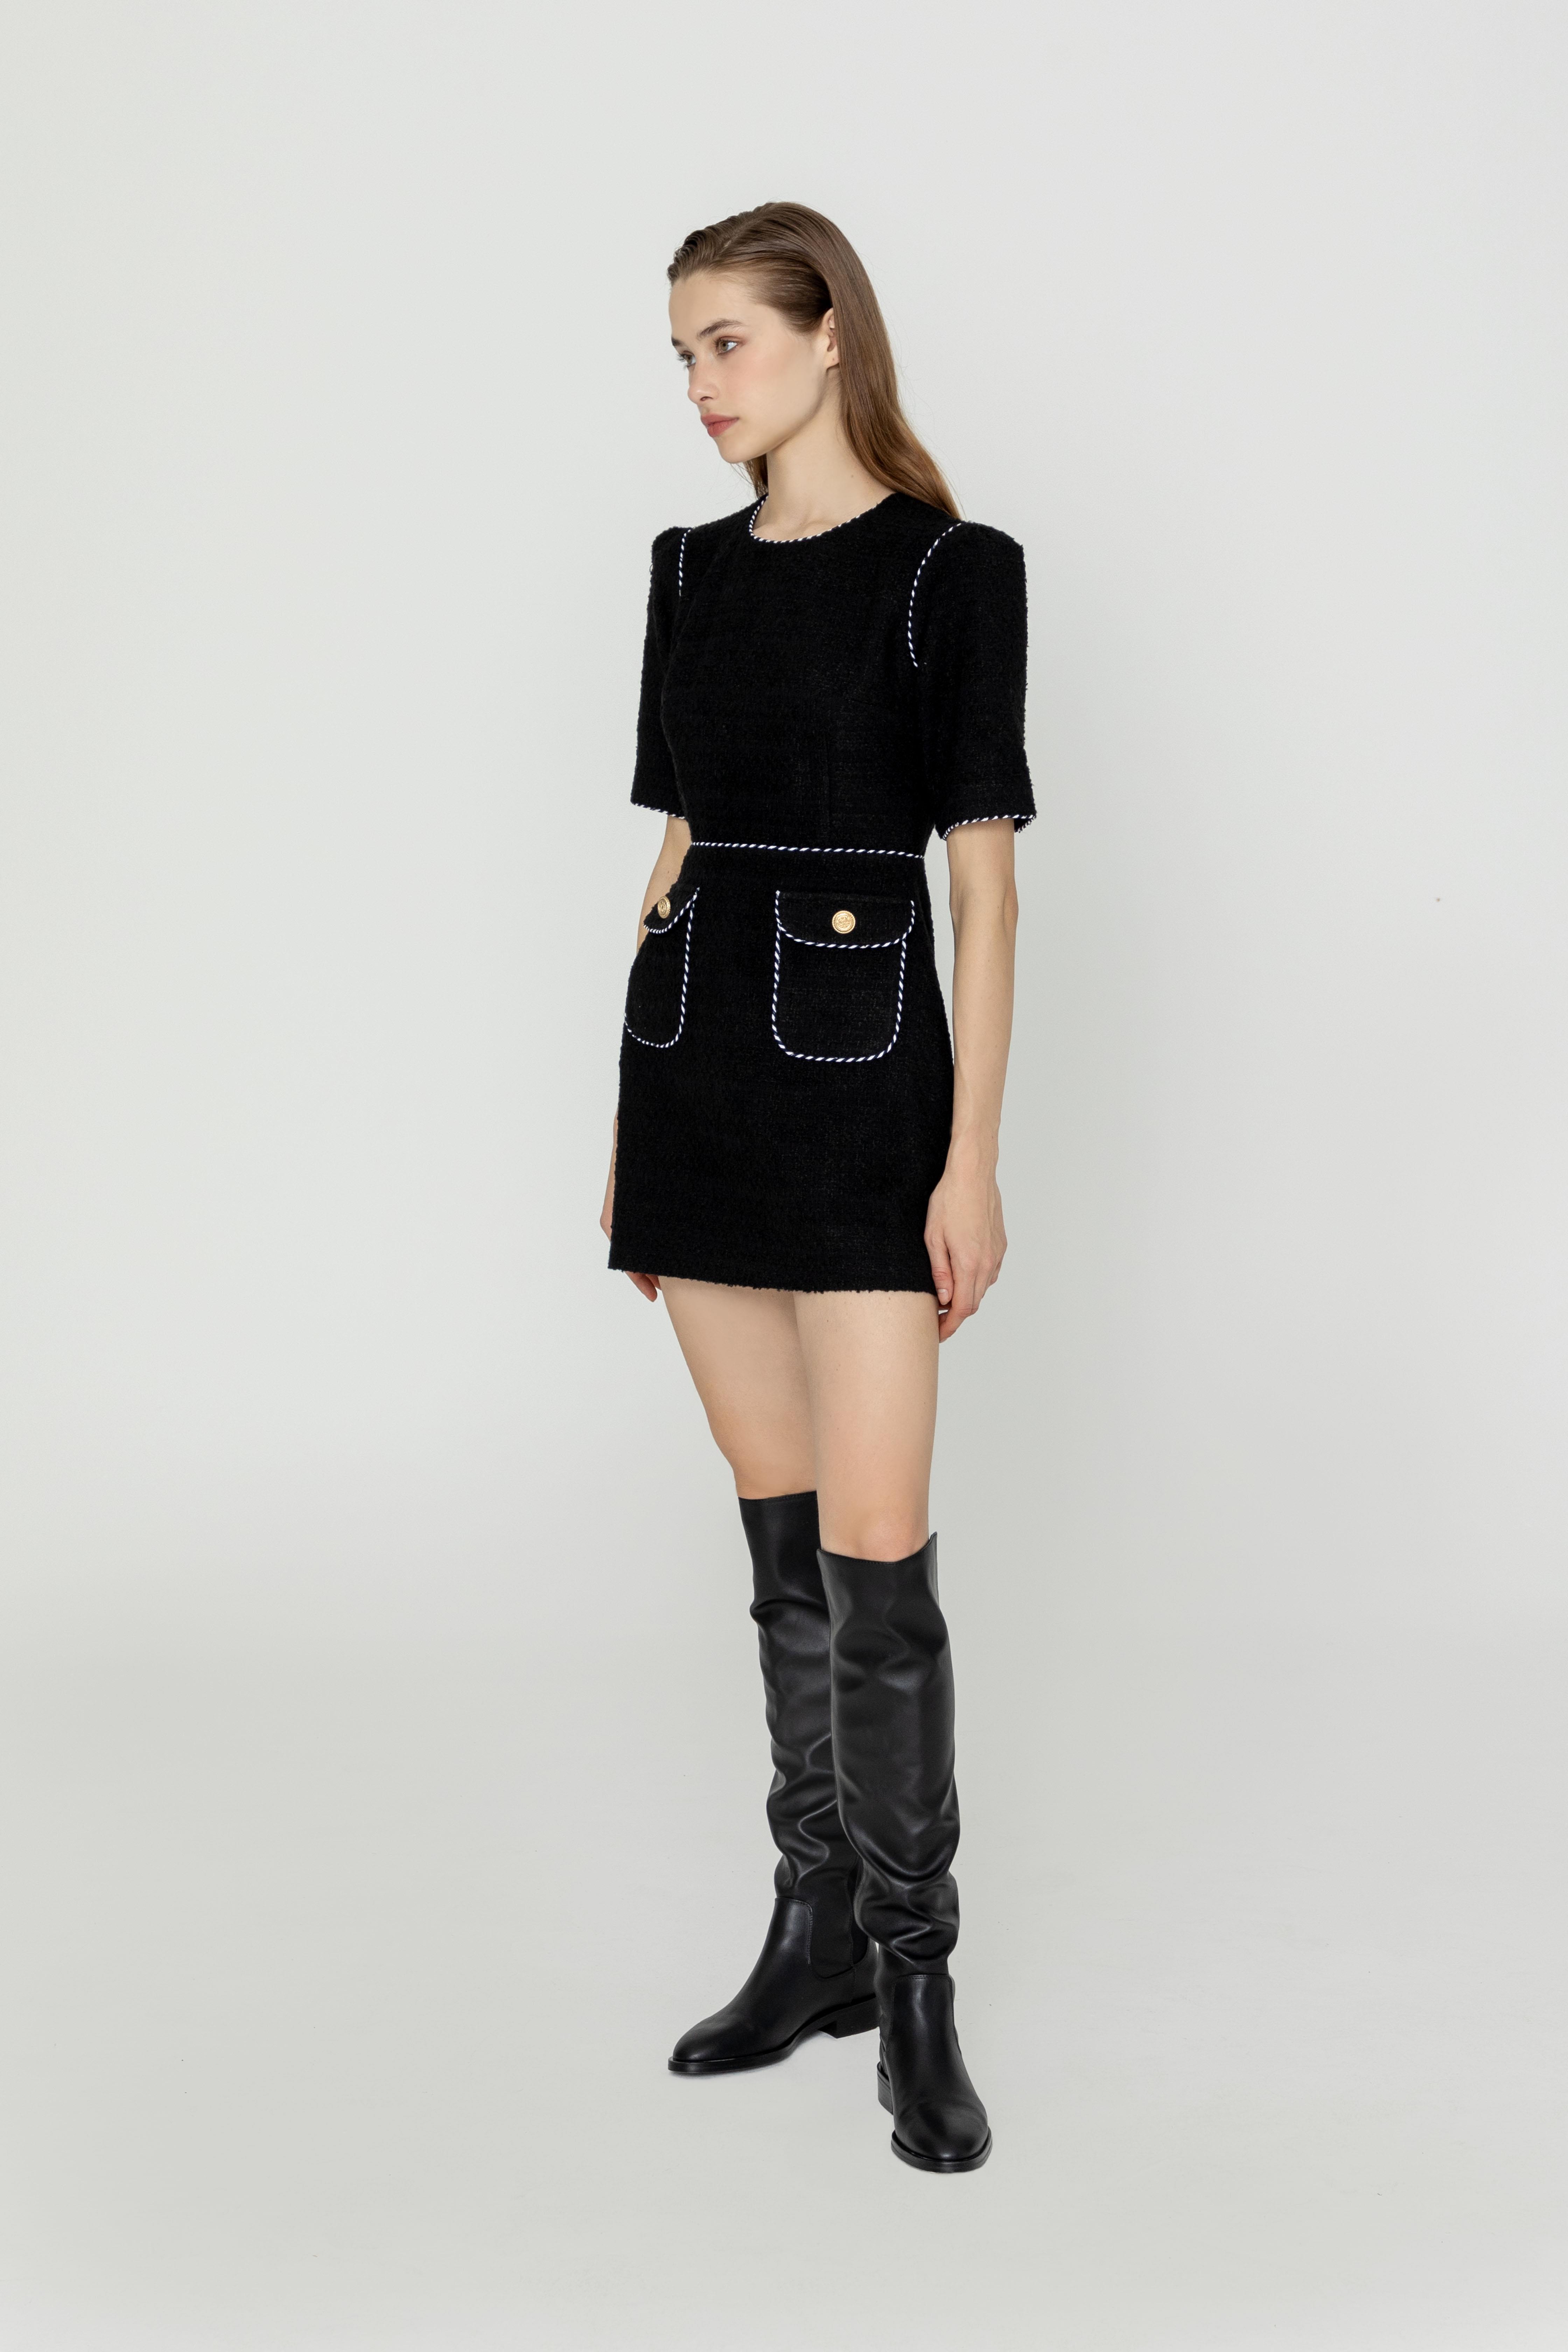 Lolly black mini dress for Women